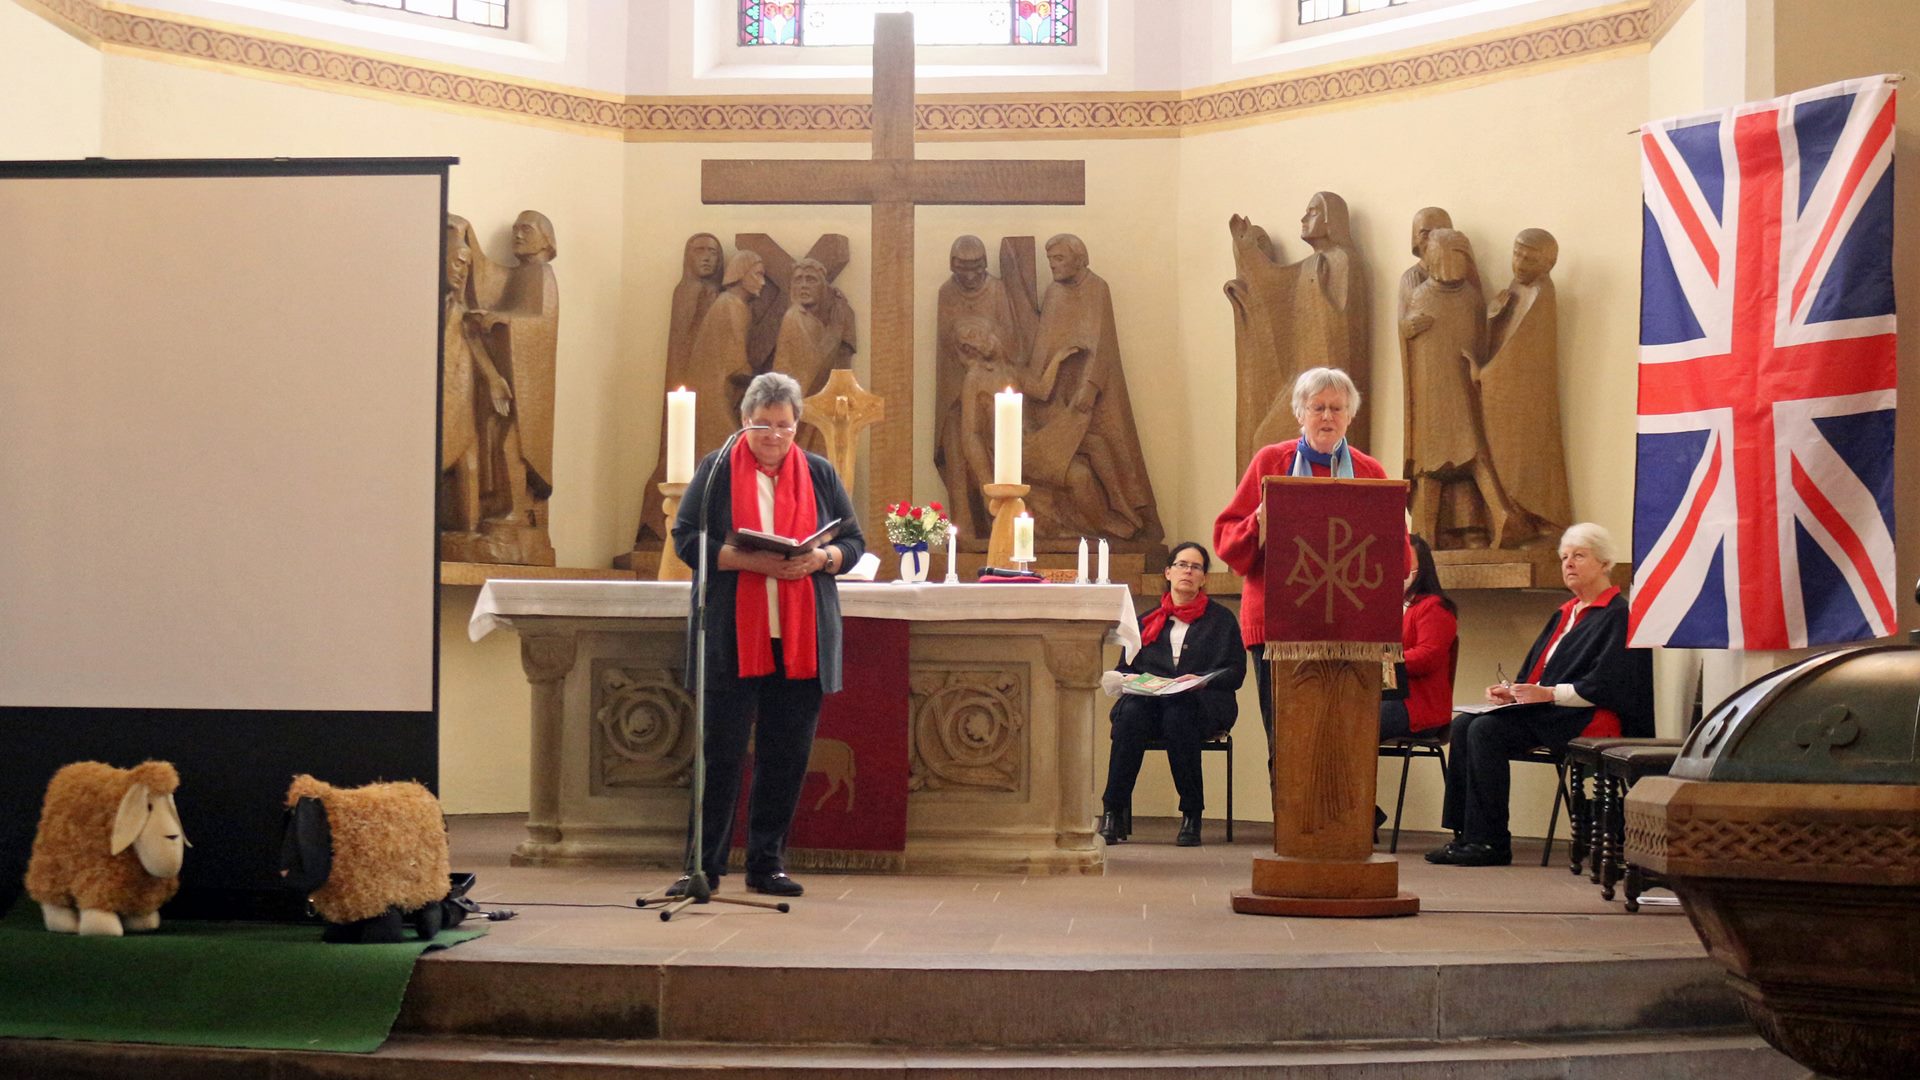 Vor einem Altar stehen zwei Frauen, die eine Lesung halten. An der Wand ist eine britische Flagge zu erkennen. Im Hintergrund sitzen drei Frauen und hören zu.